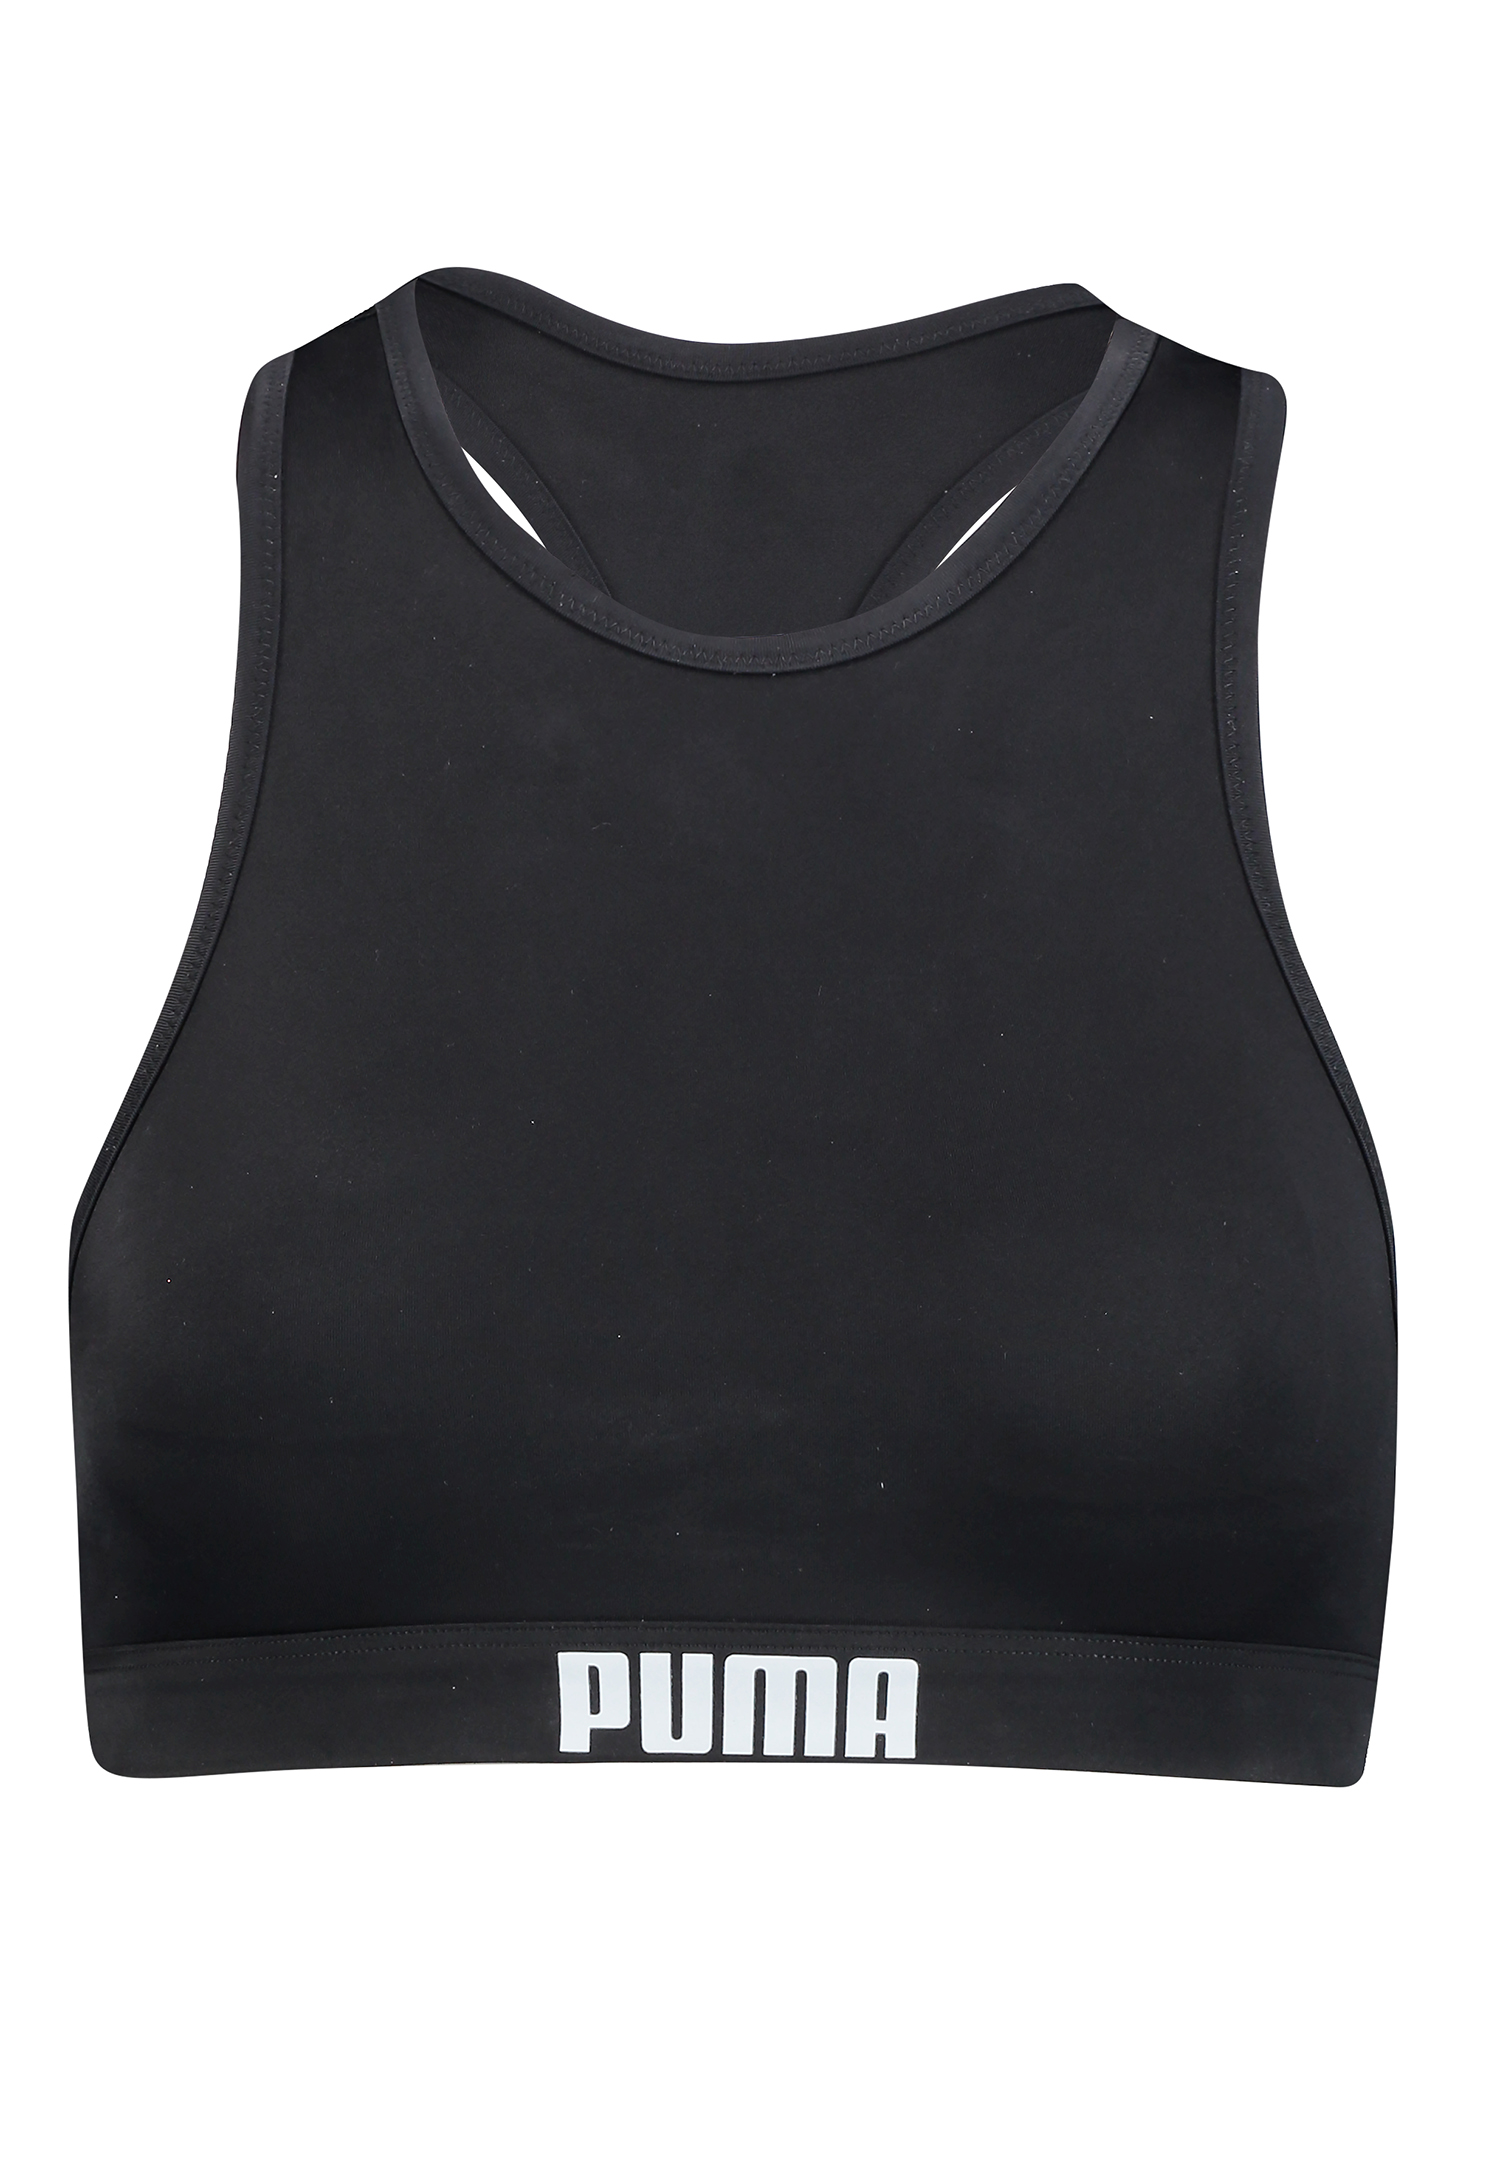 Купальник Puma SWIM WOMEN RACERBACK TOP, черный цена и фото